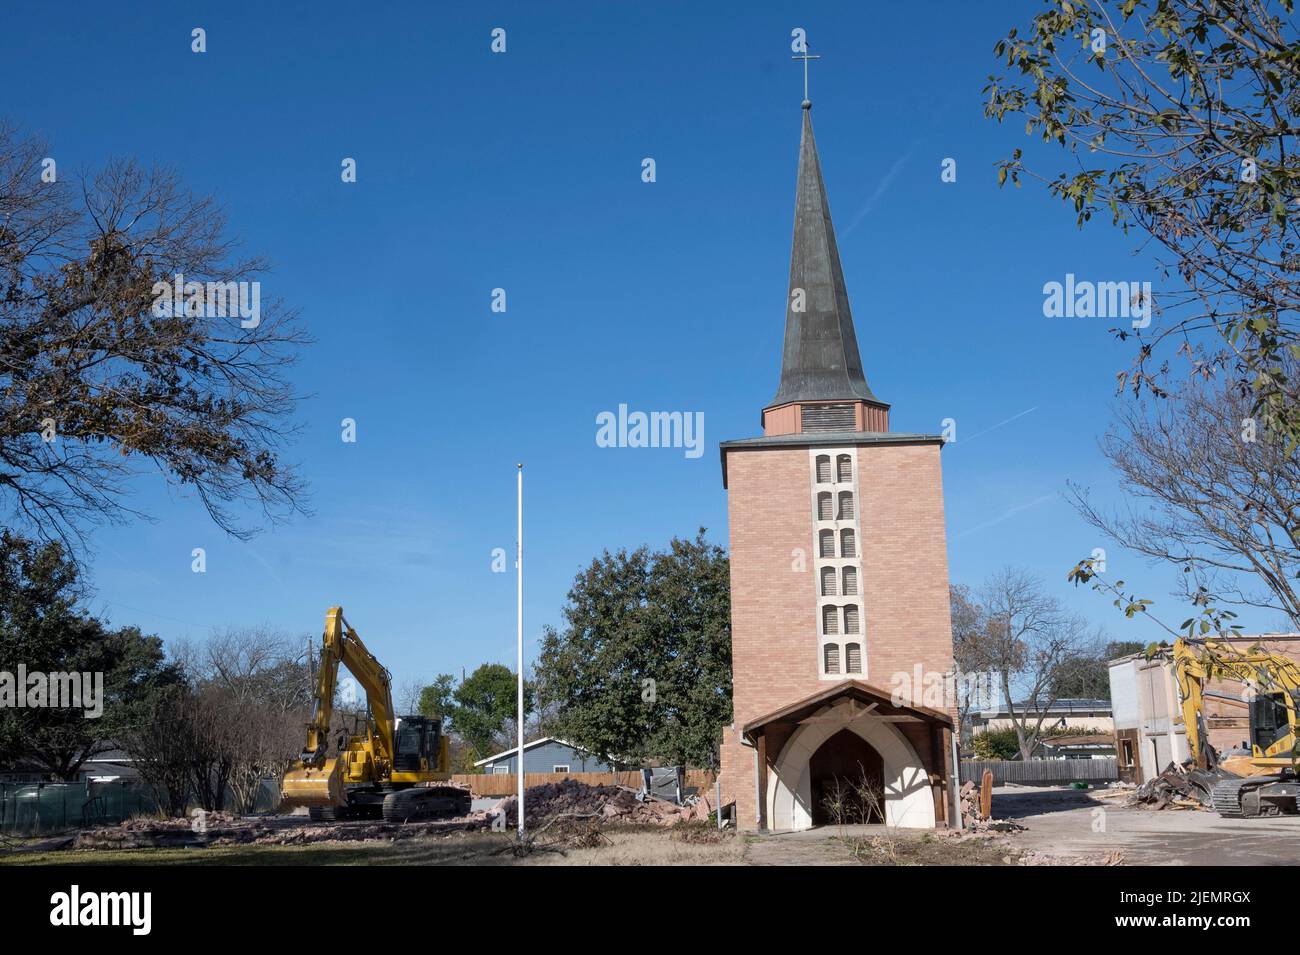 Austin Texas USA, 2022: Demolition Crews arbeiten daran, die ehemalige erste Cumberland Presbyterian Church im Norden von Austin abzureißen, die aufgrund der rückläufigen Mitgliedschaft geschlossen werden musste. Das Gebäude wurde 1956 errichtet, die Gemeinde stammt aus dem Jahr 1846. Das Gelände, mitten in einem Wohnviertel, wird zu Einfamilienhäusern umbaut. Stockfoto